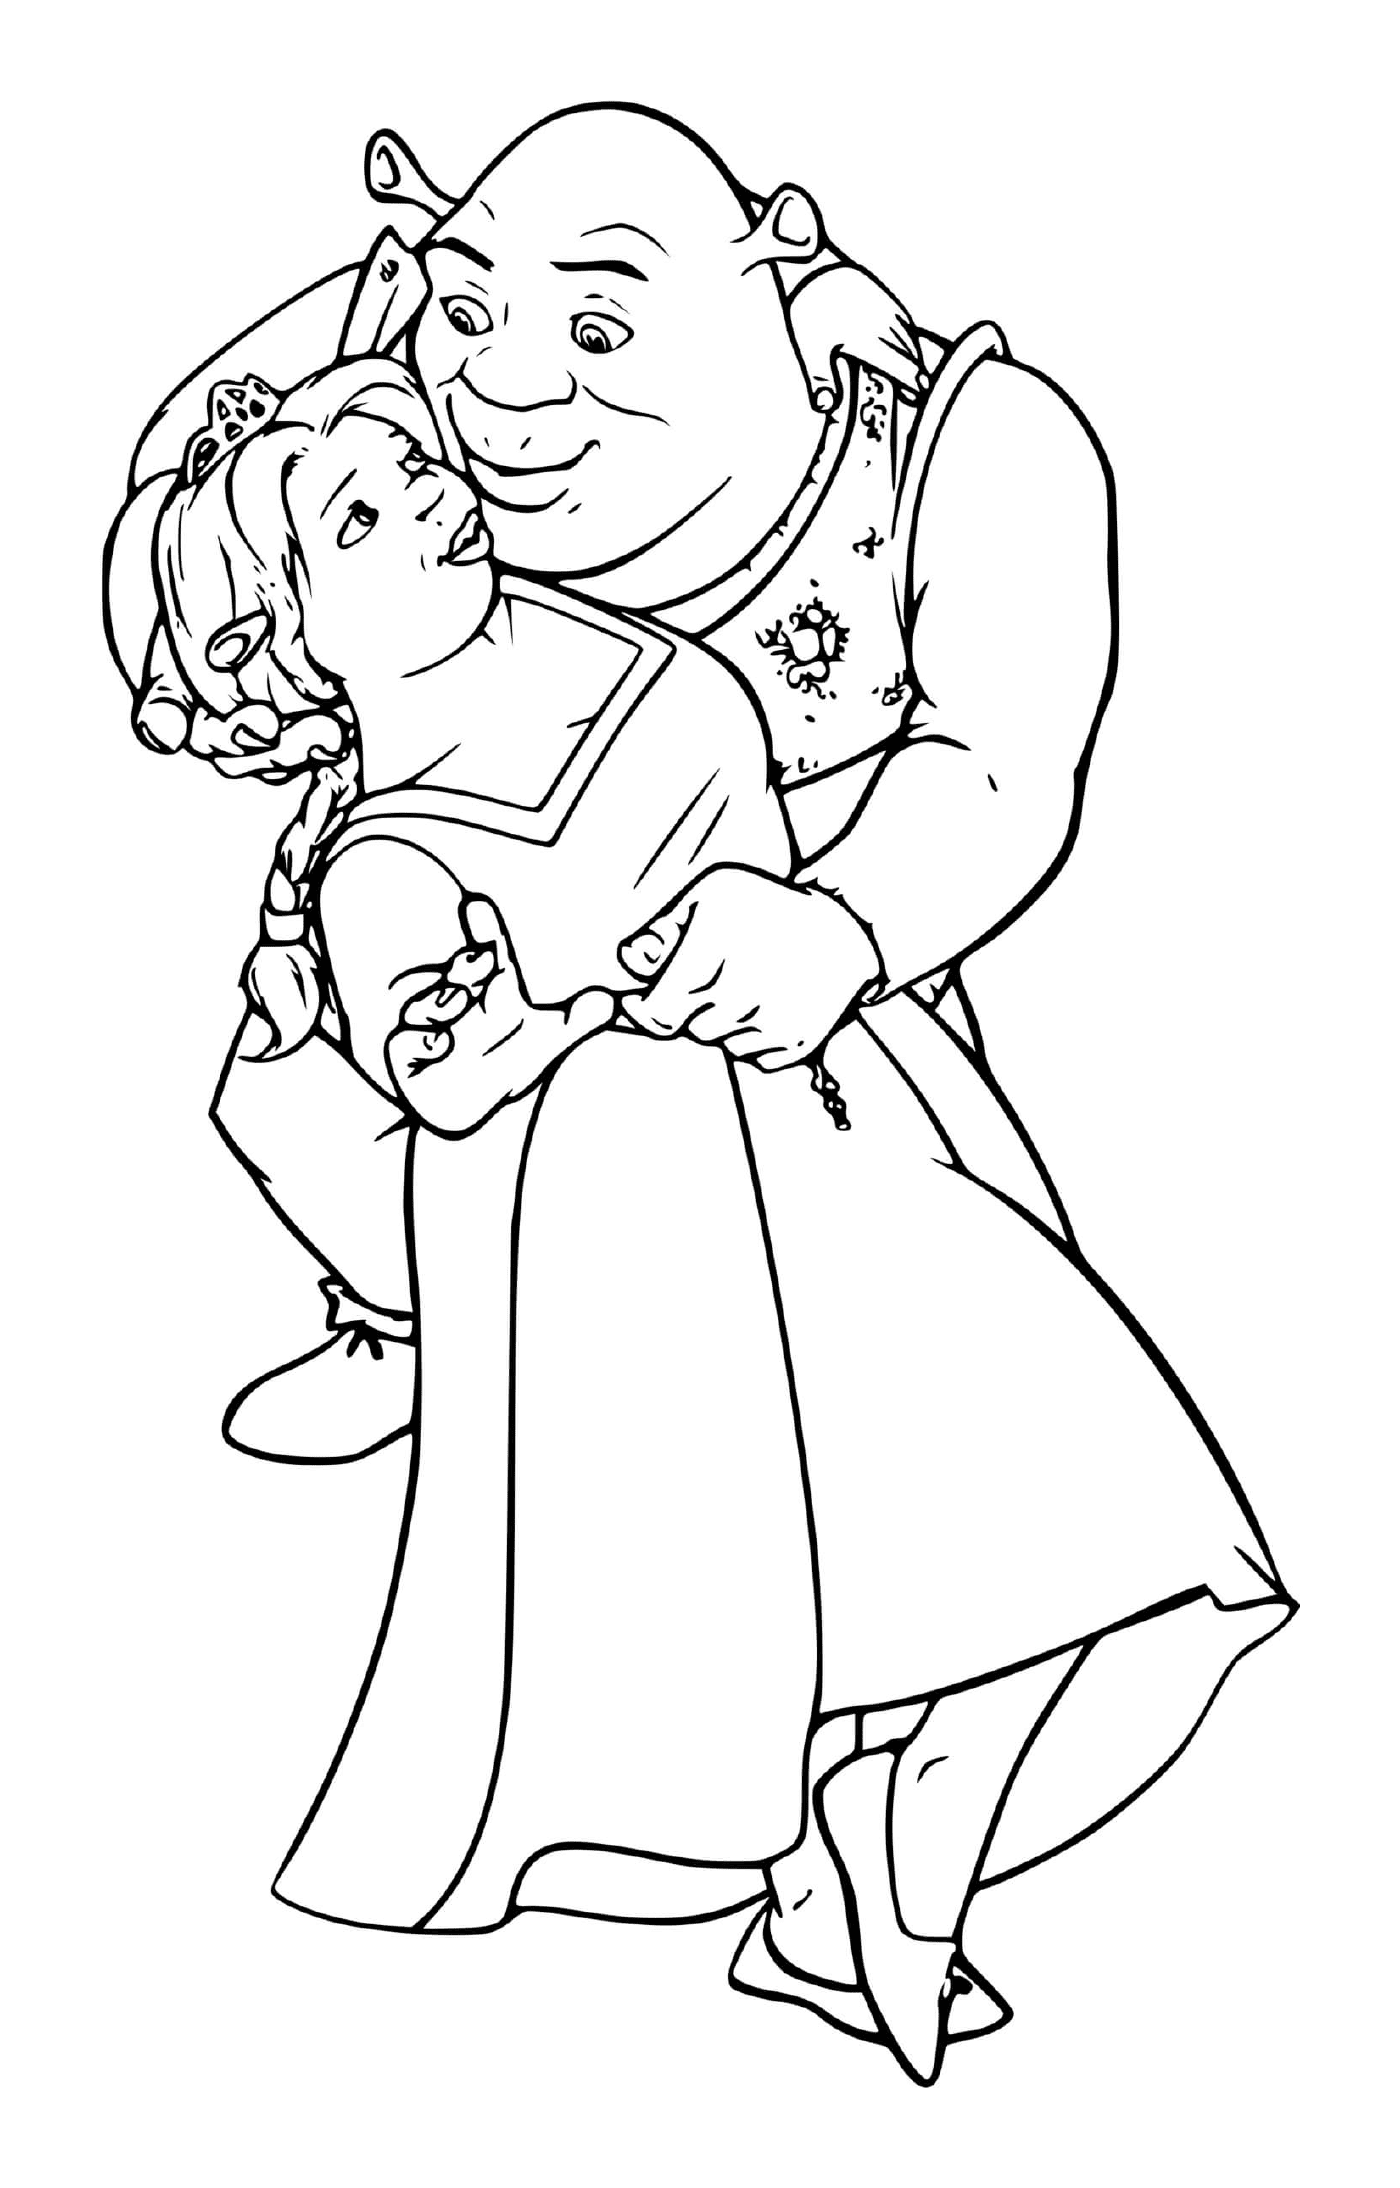  Um homem velho segurando uma menina em seus braços 